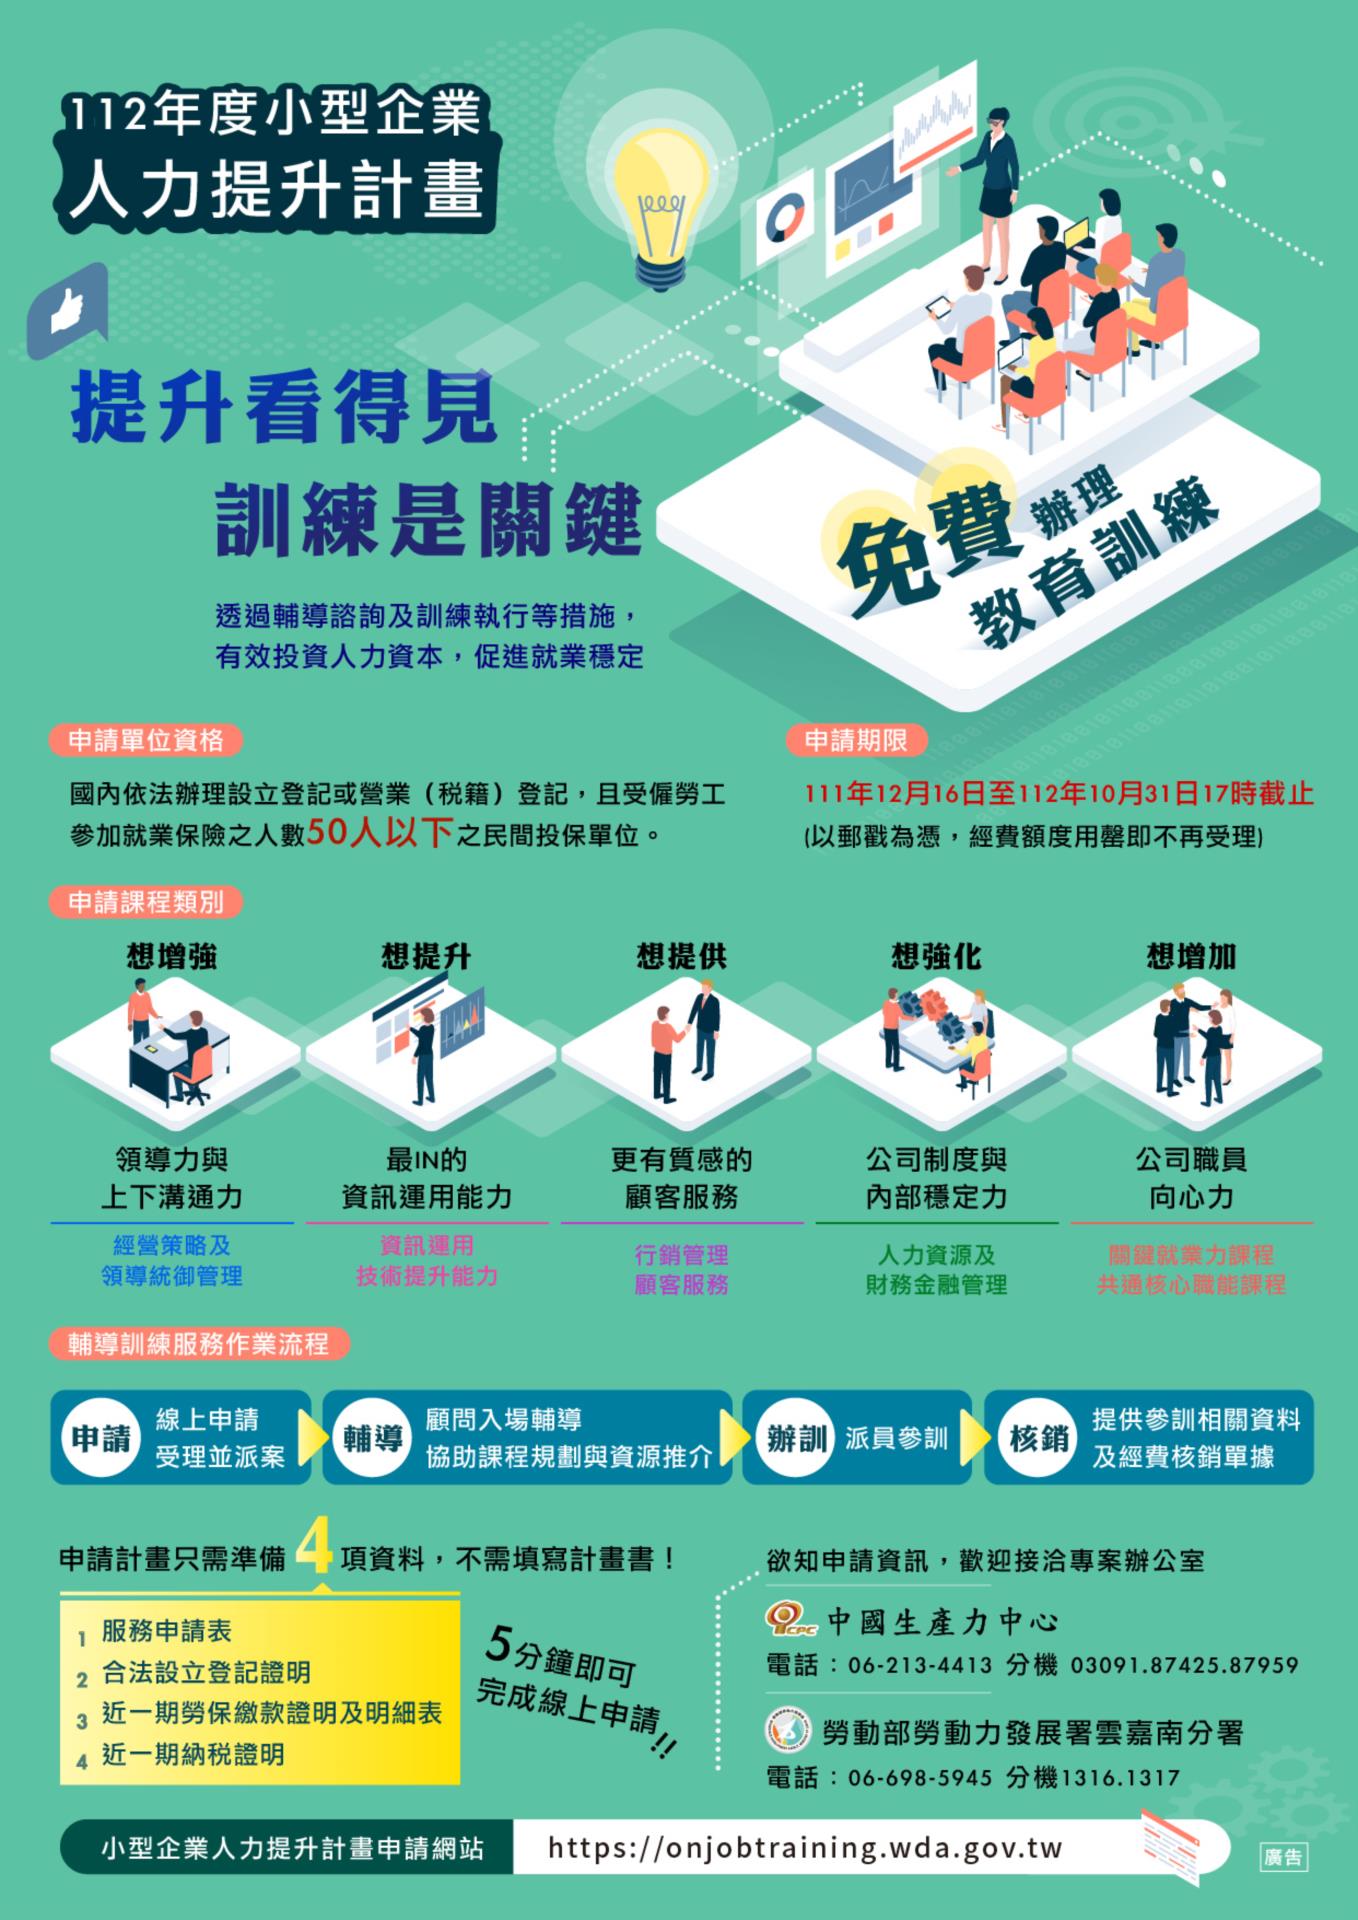 【廠協會轉知】：111.11.29 中國生產力中心「111年小型企業人力提升計畫」